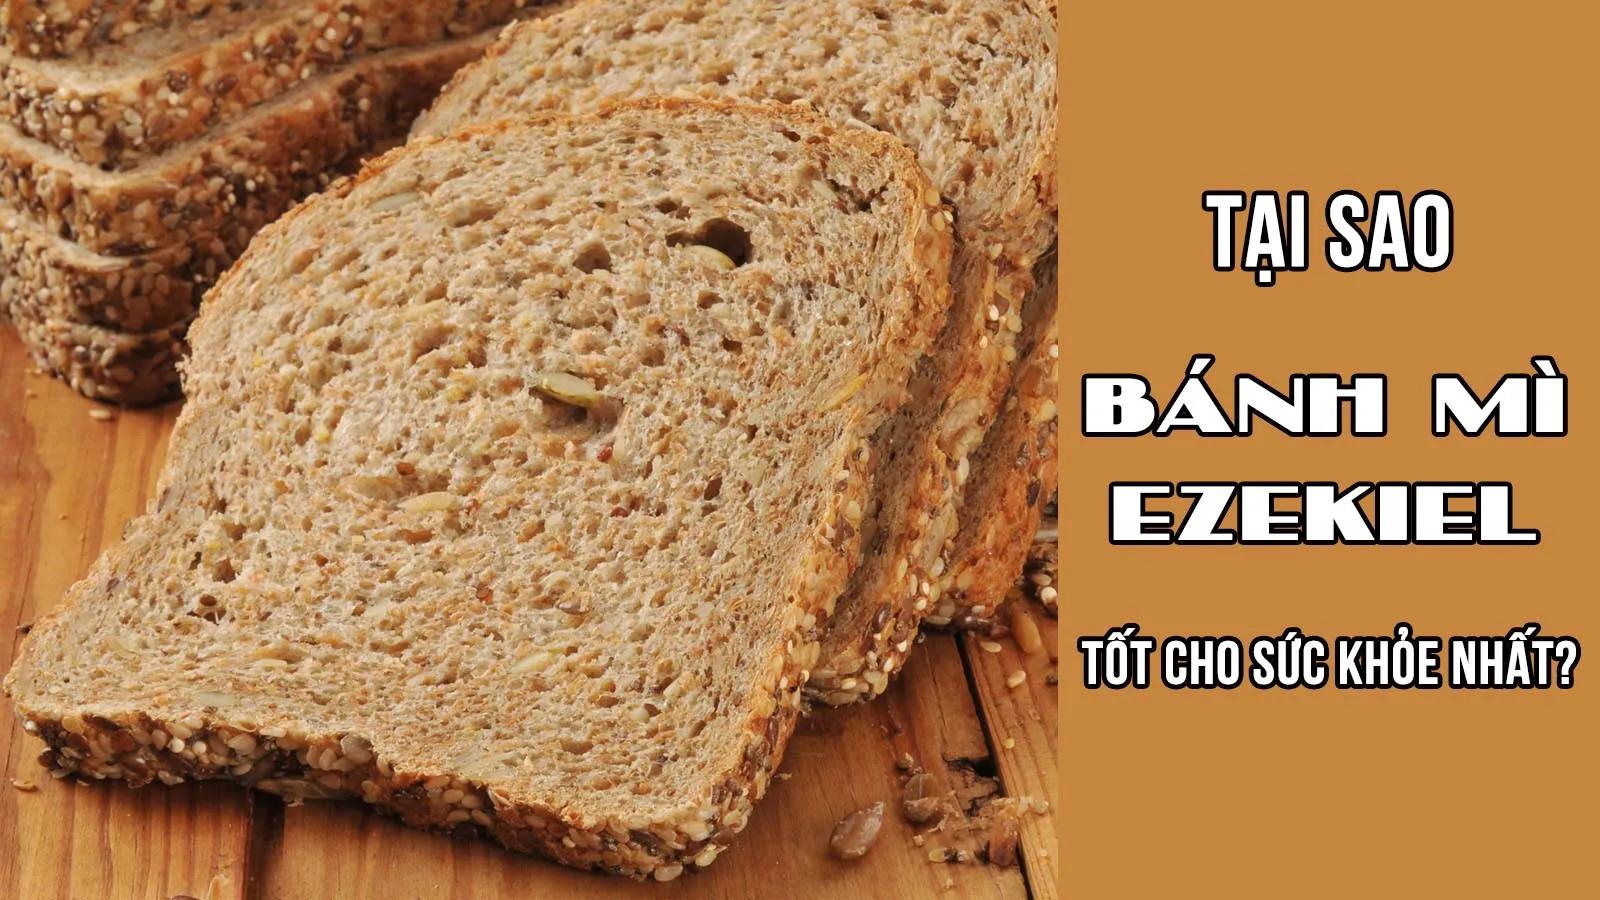 Tại sao bánh mì Ezekiel là loại bánh tốt cho sức khỏe nhất?